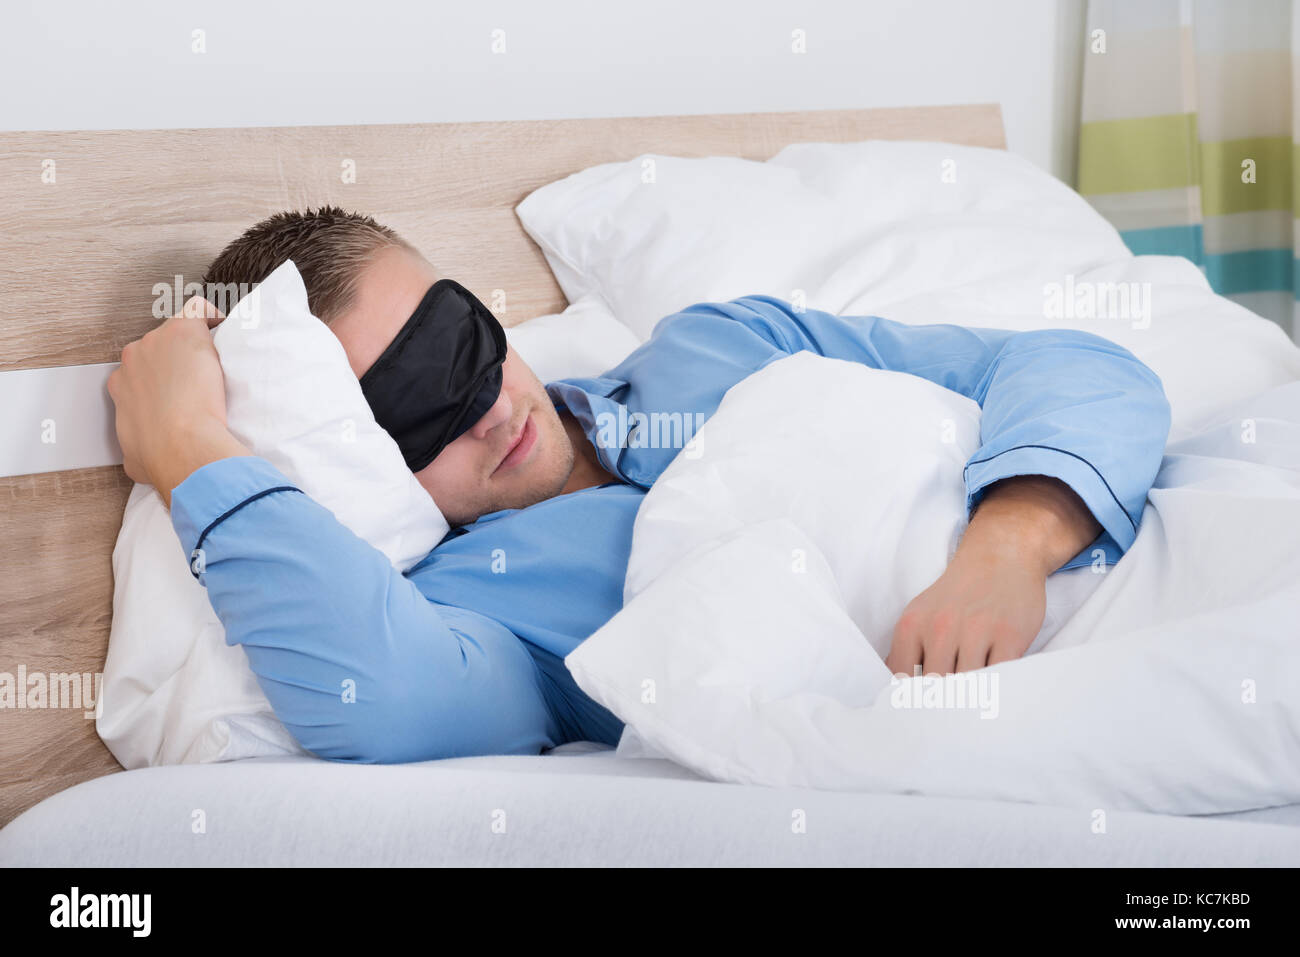 Young Man Sleeping On Bed Using Eye Mask Stock Photo